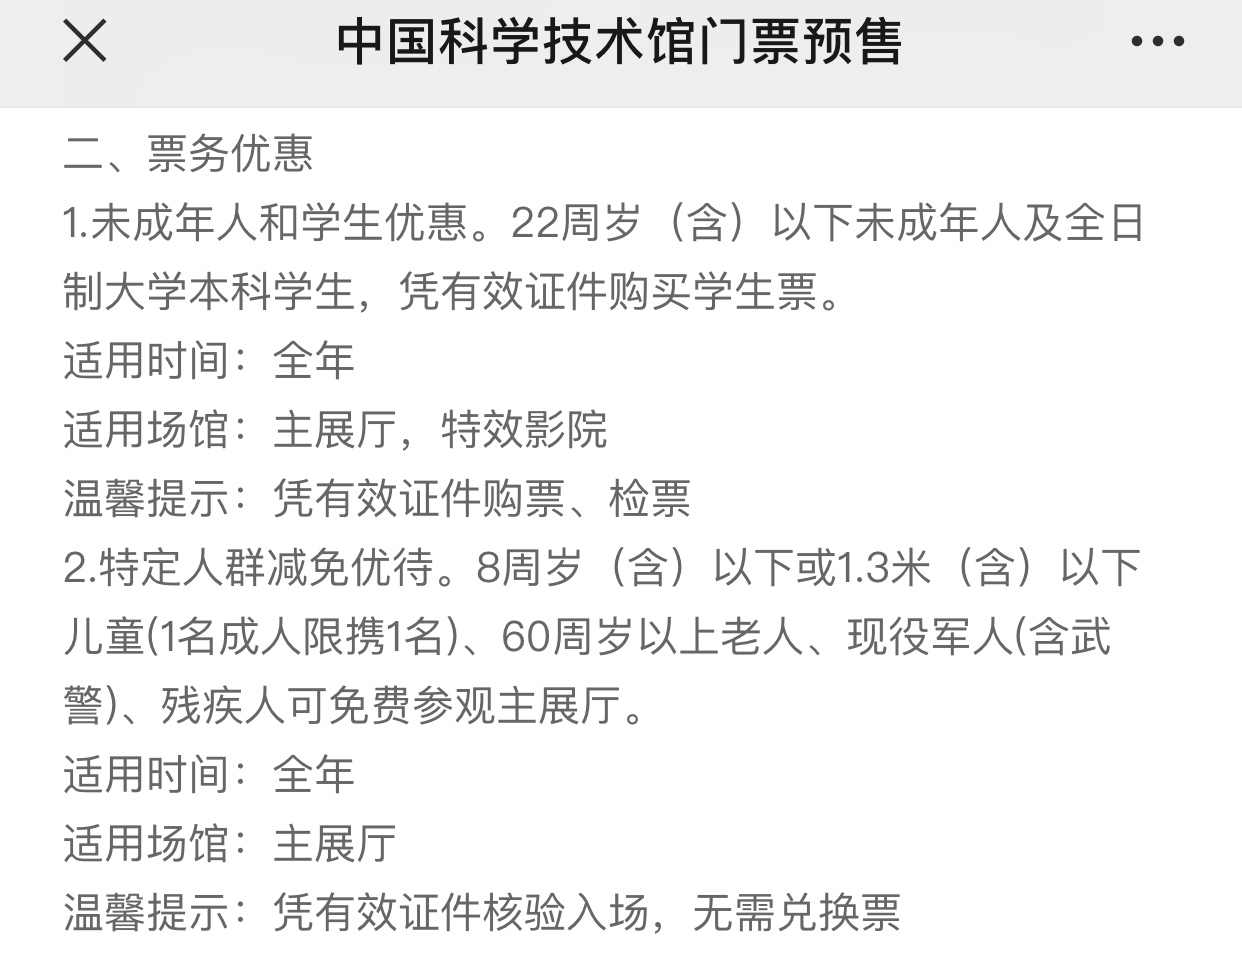 中国科技馆规定1名成人限携1名免票儿童